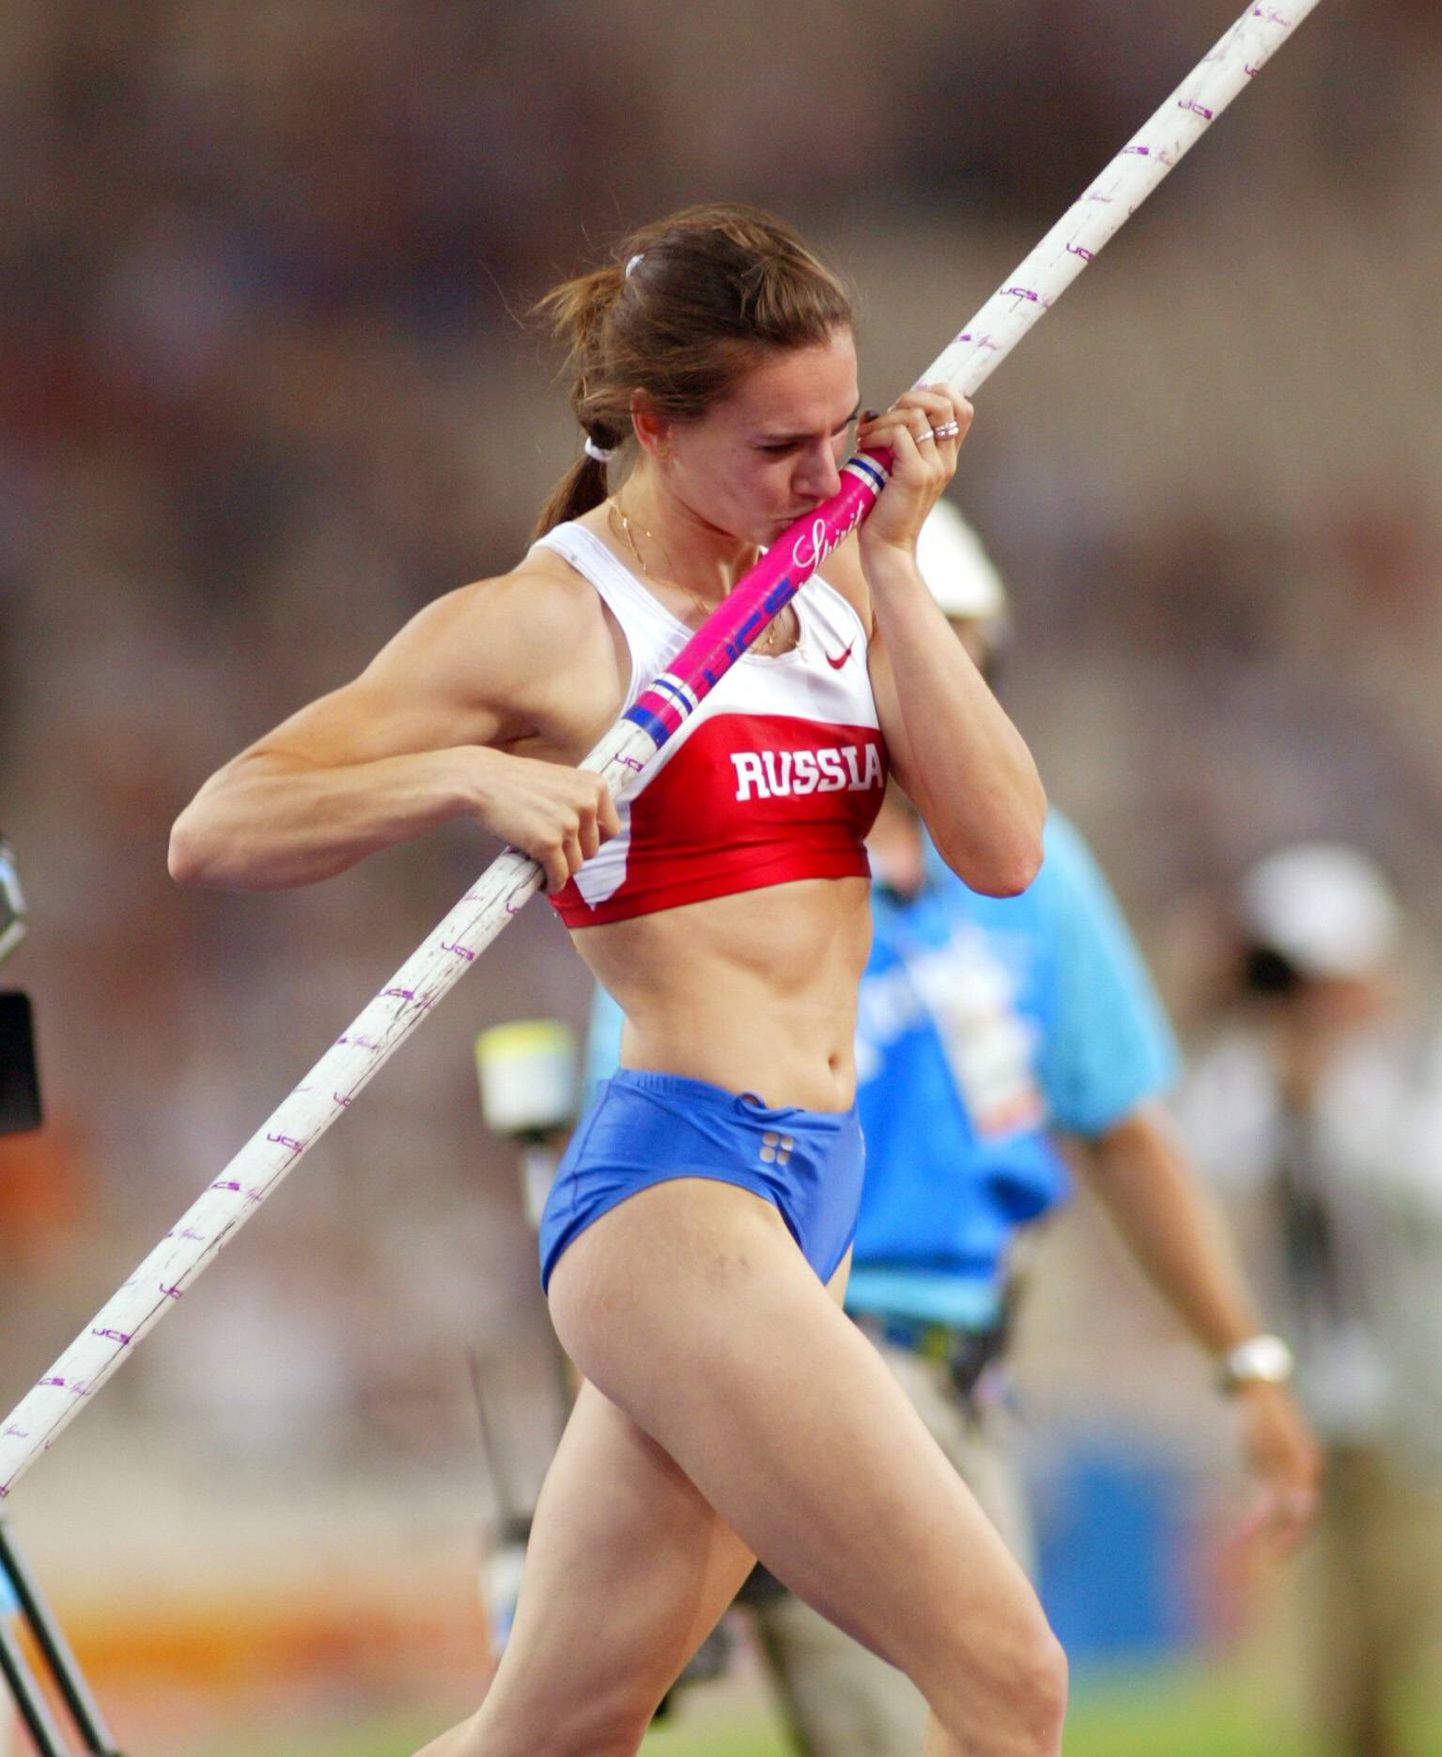 Vene teivashüppaja Jelena Issinbajeva võistles 24. augustil 2004 Kreekas Ateenas, ületades kõrguse 4,91. Tema nimel on aastast 2009 naiste teivashüppe rekord 5,06 m